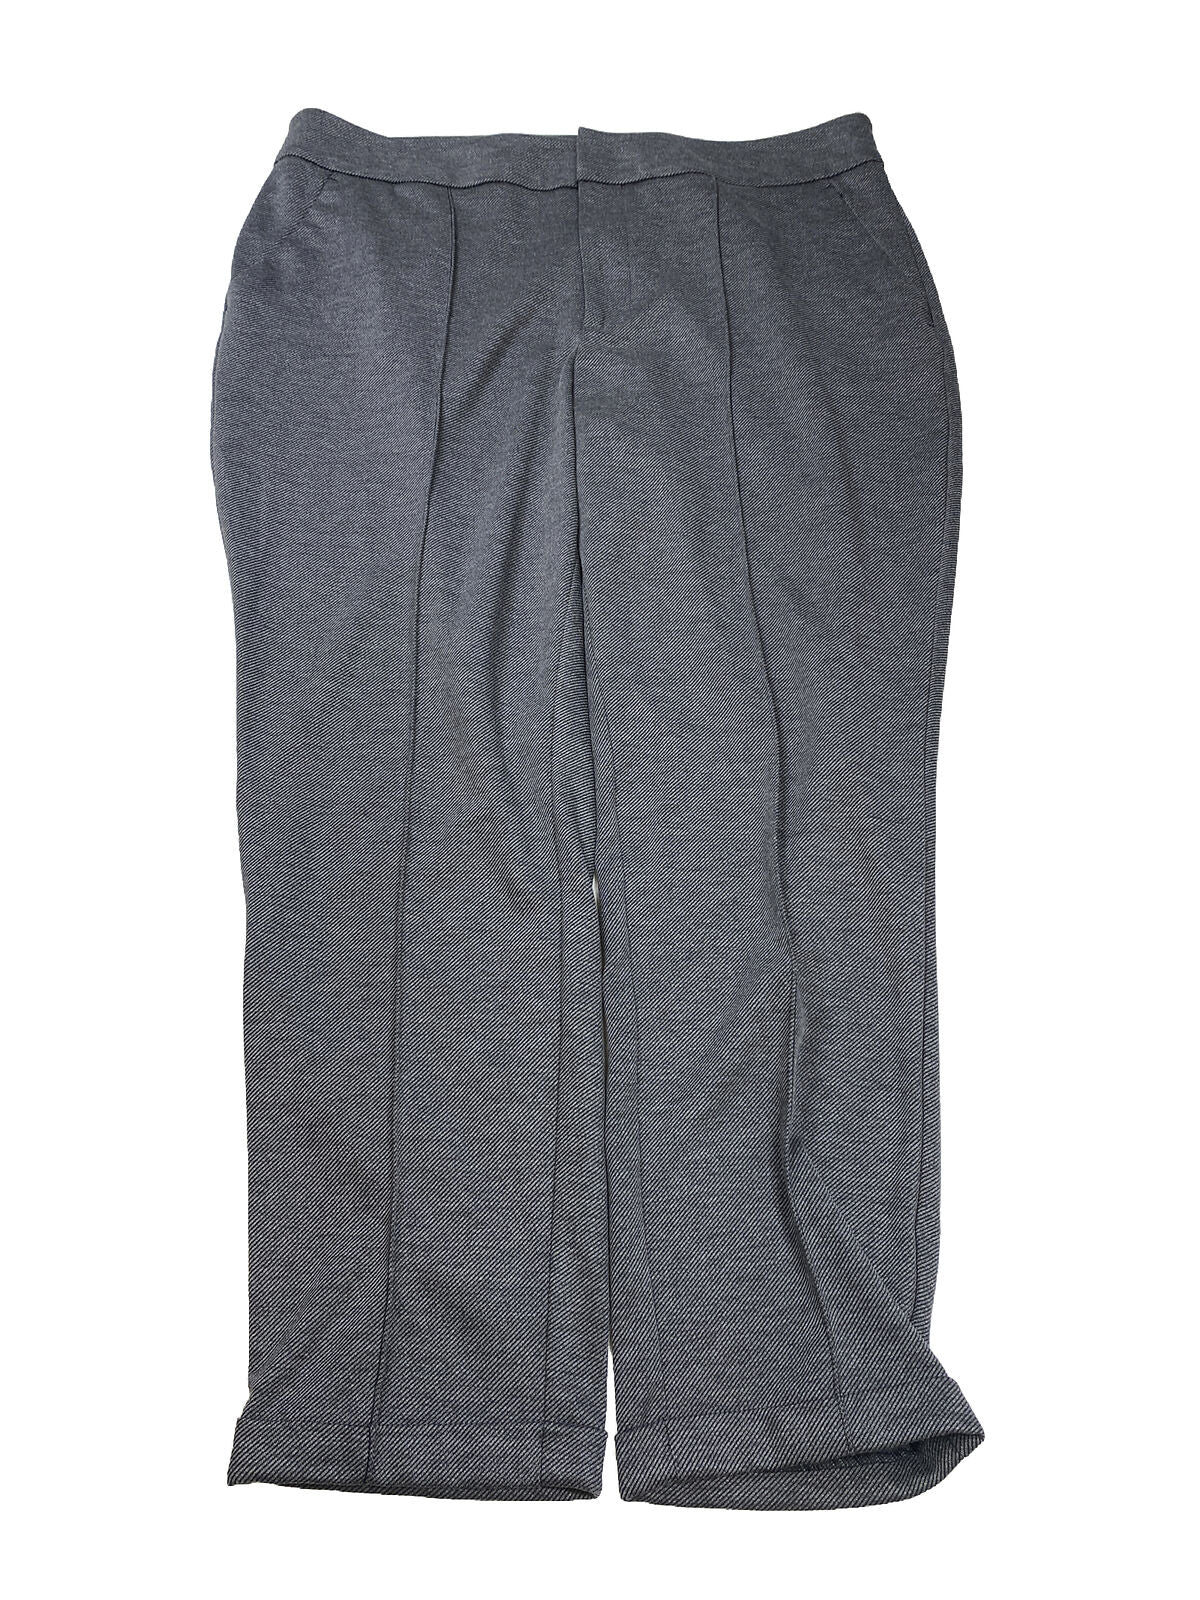 NUEVO Pantalón de vestir elástico de corte cónico gris para mujer de Nine West - 18